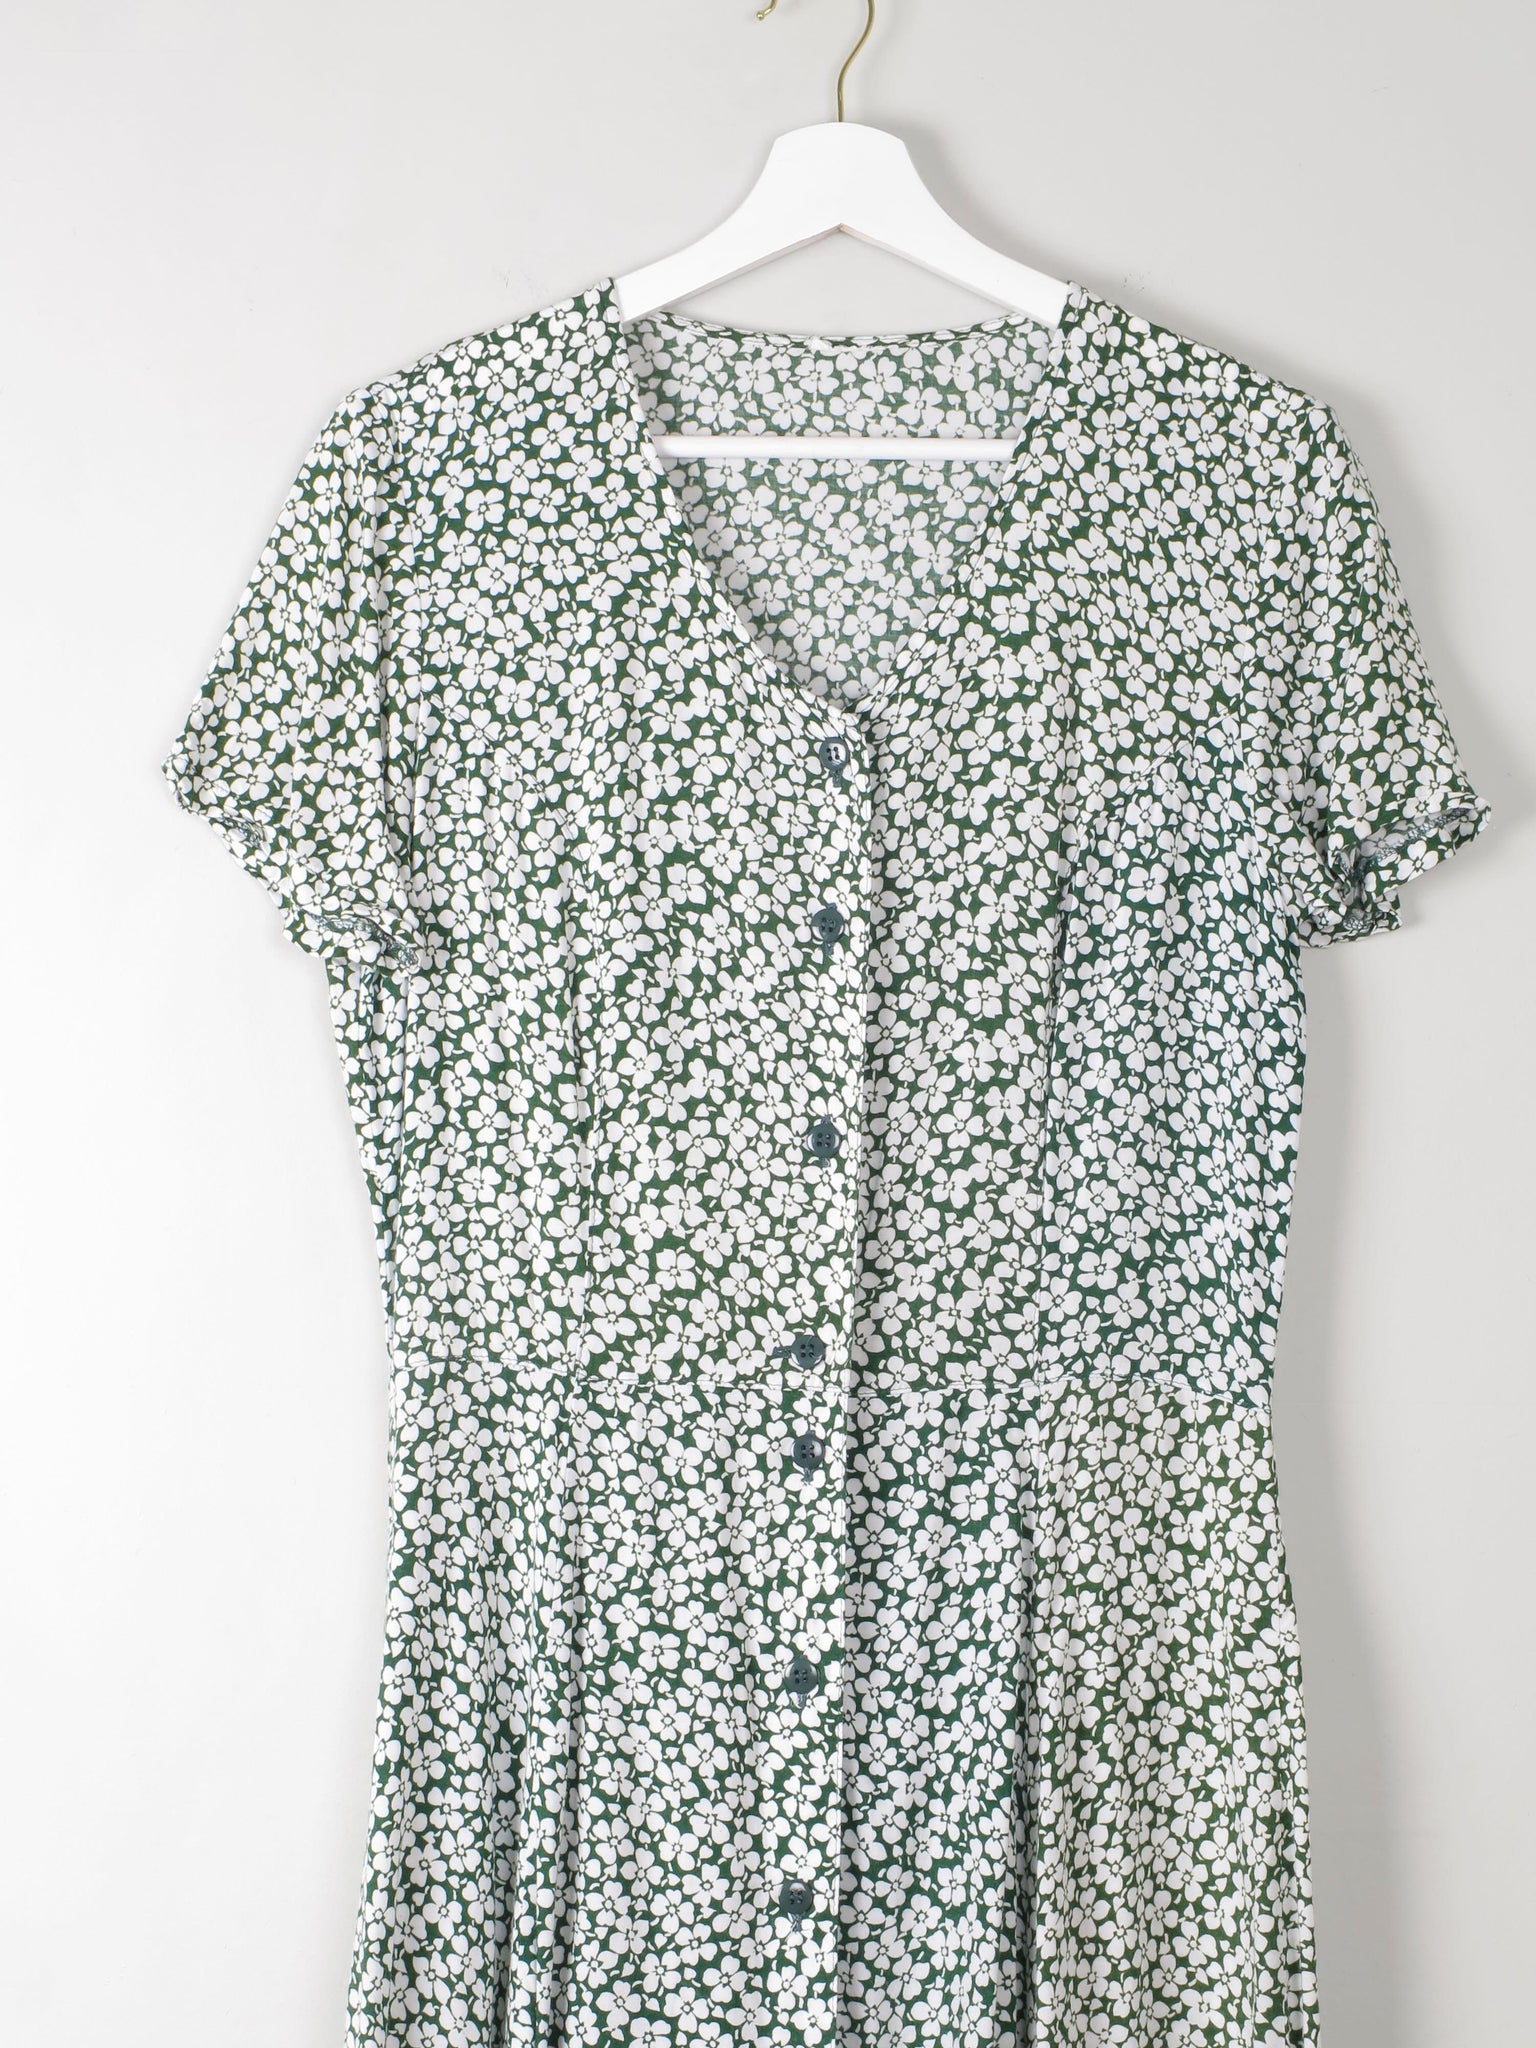 Vintage Green Floral Printed Dress S - The Harlequin